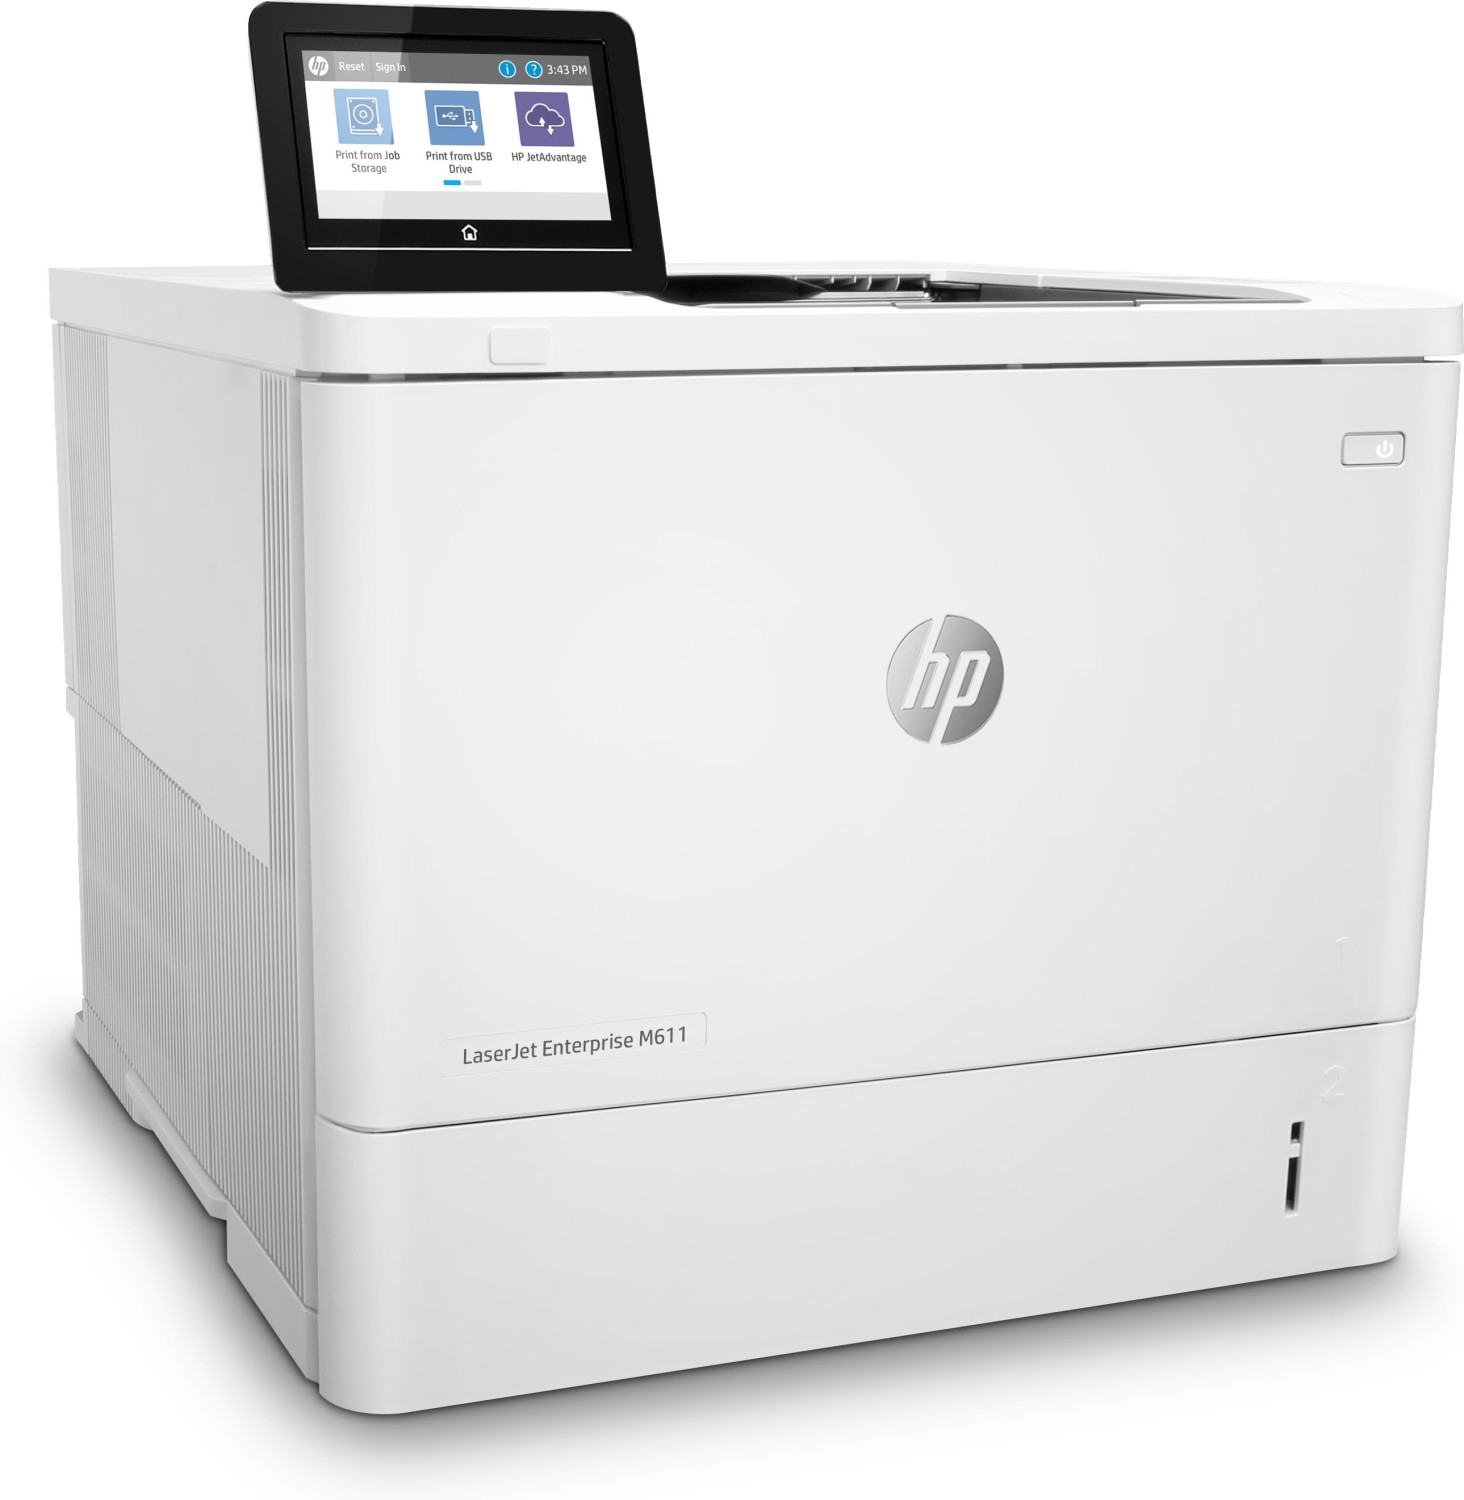 Image of HP LaserJet Enterprise Stampante Enterprise LaserJet M611dn, Bianco e nero, Stampante per Stampa, Stampa fronte/retro